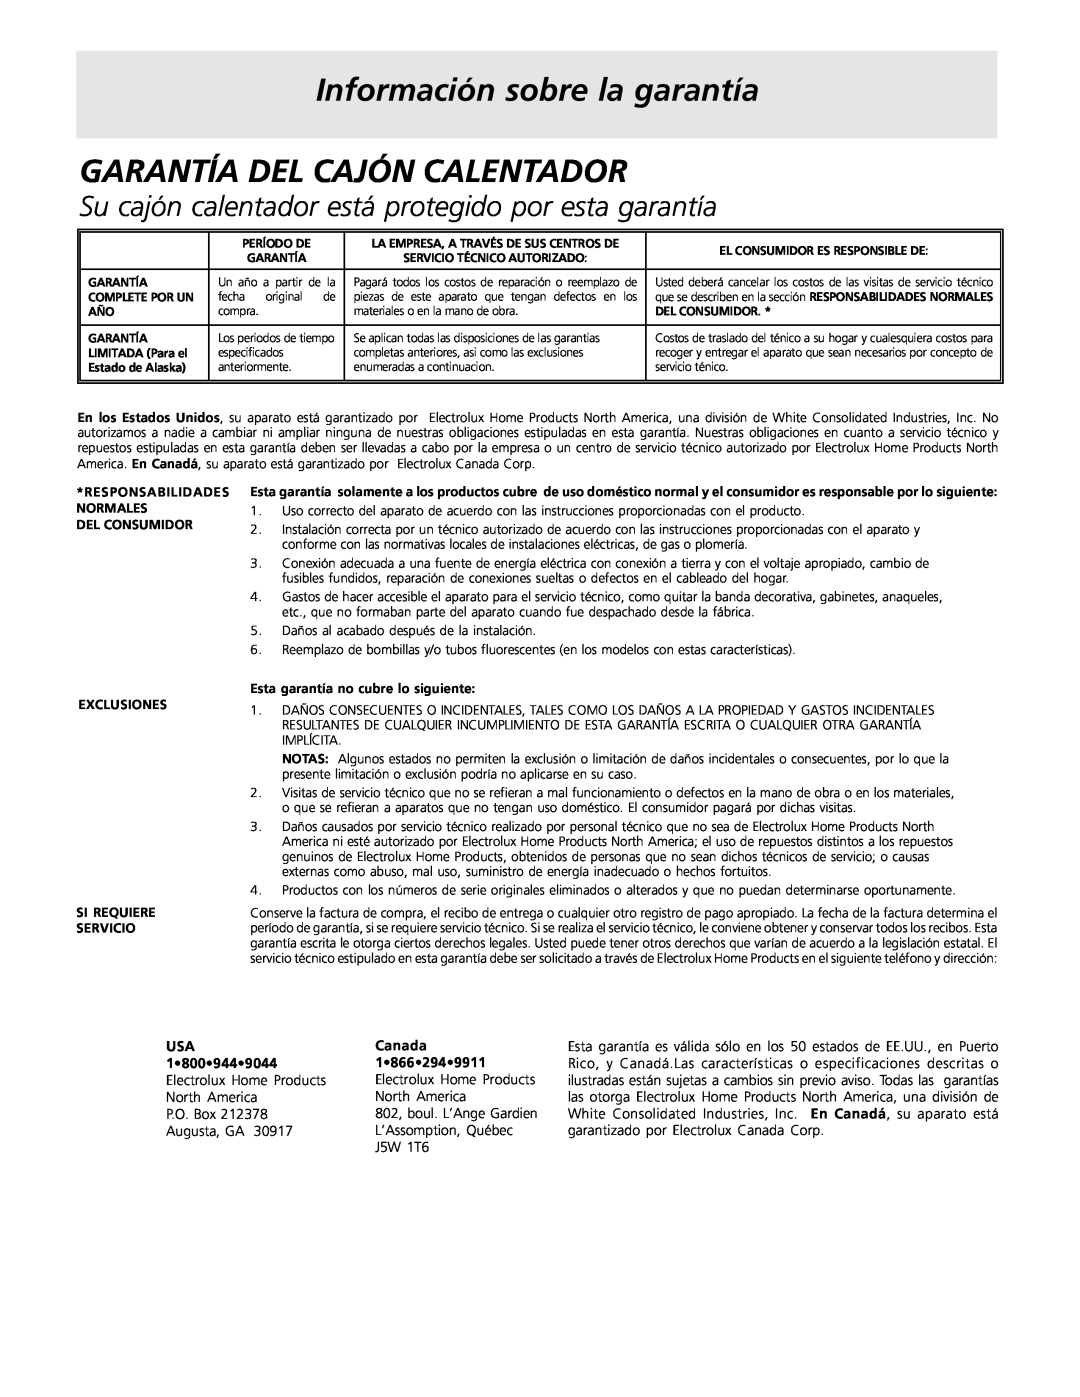 Frigidaire Warm & Serve Drawer Información sobre la garantía, Garantía Del Cajón Calentador, Canada 